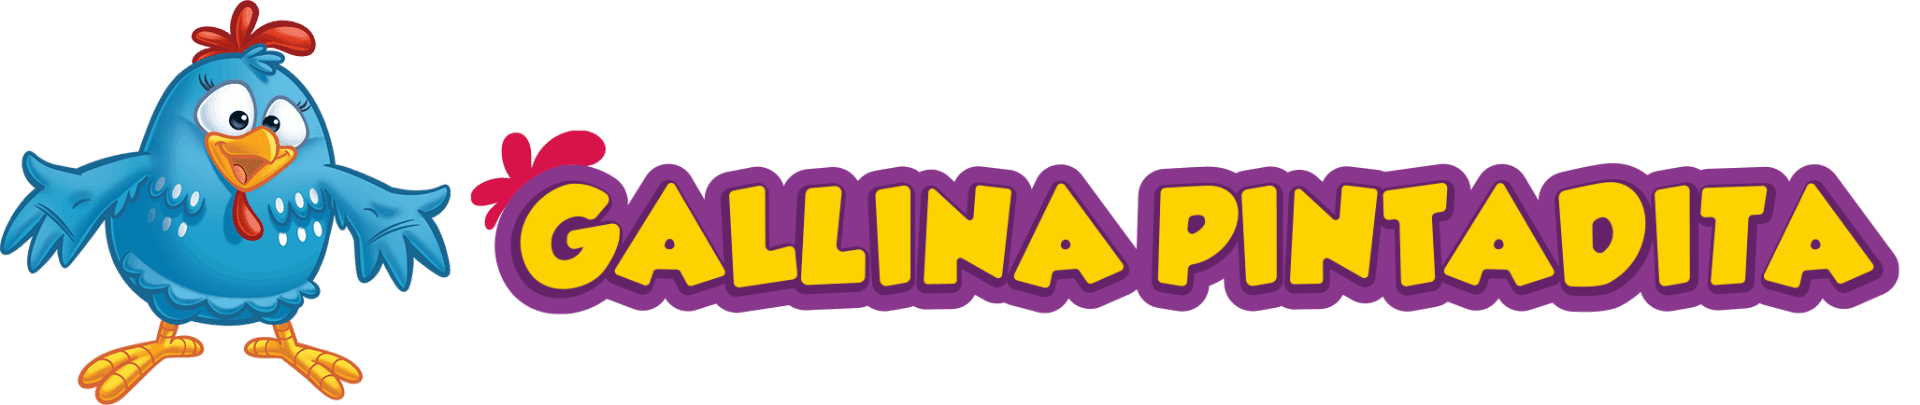 Agenda de Eventos y Shows Oficiales de la Gallina Pintadita